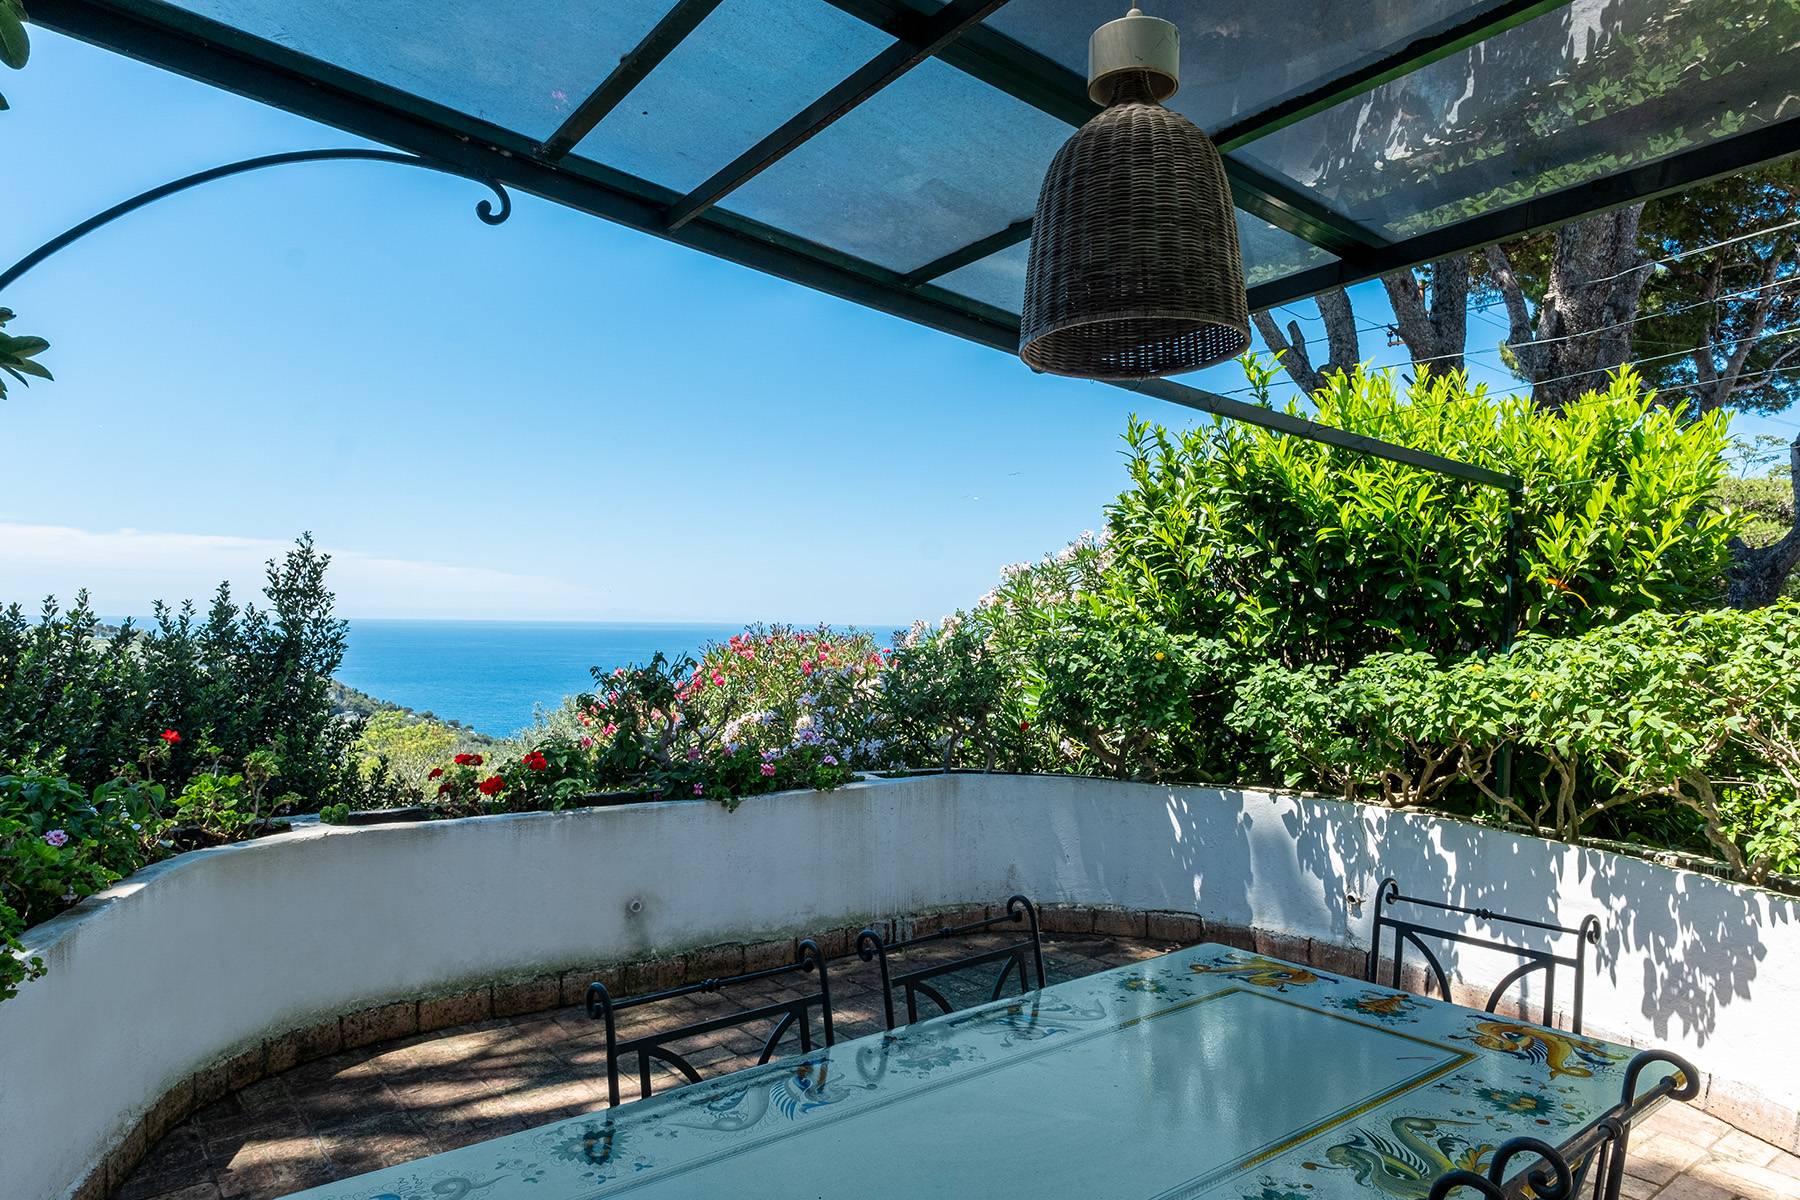 Villa in Vendita a Capri: 5 locali, 300 mq - Foto 6